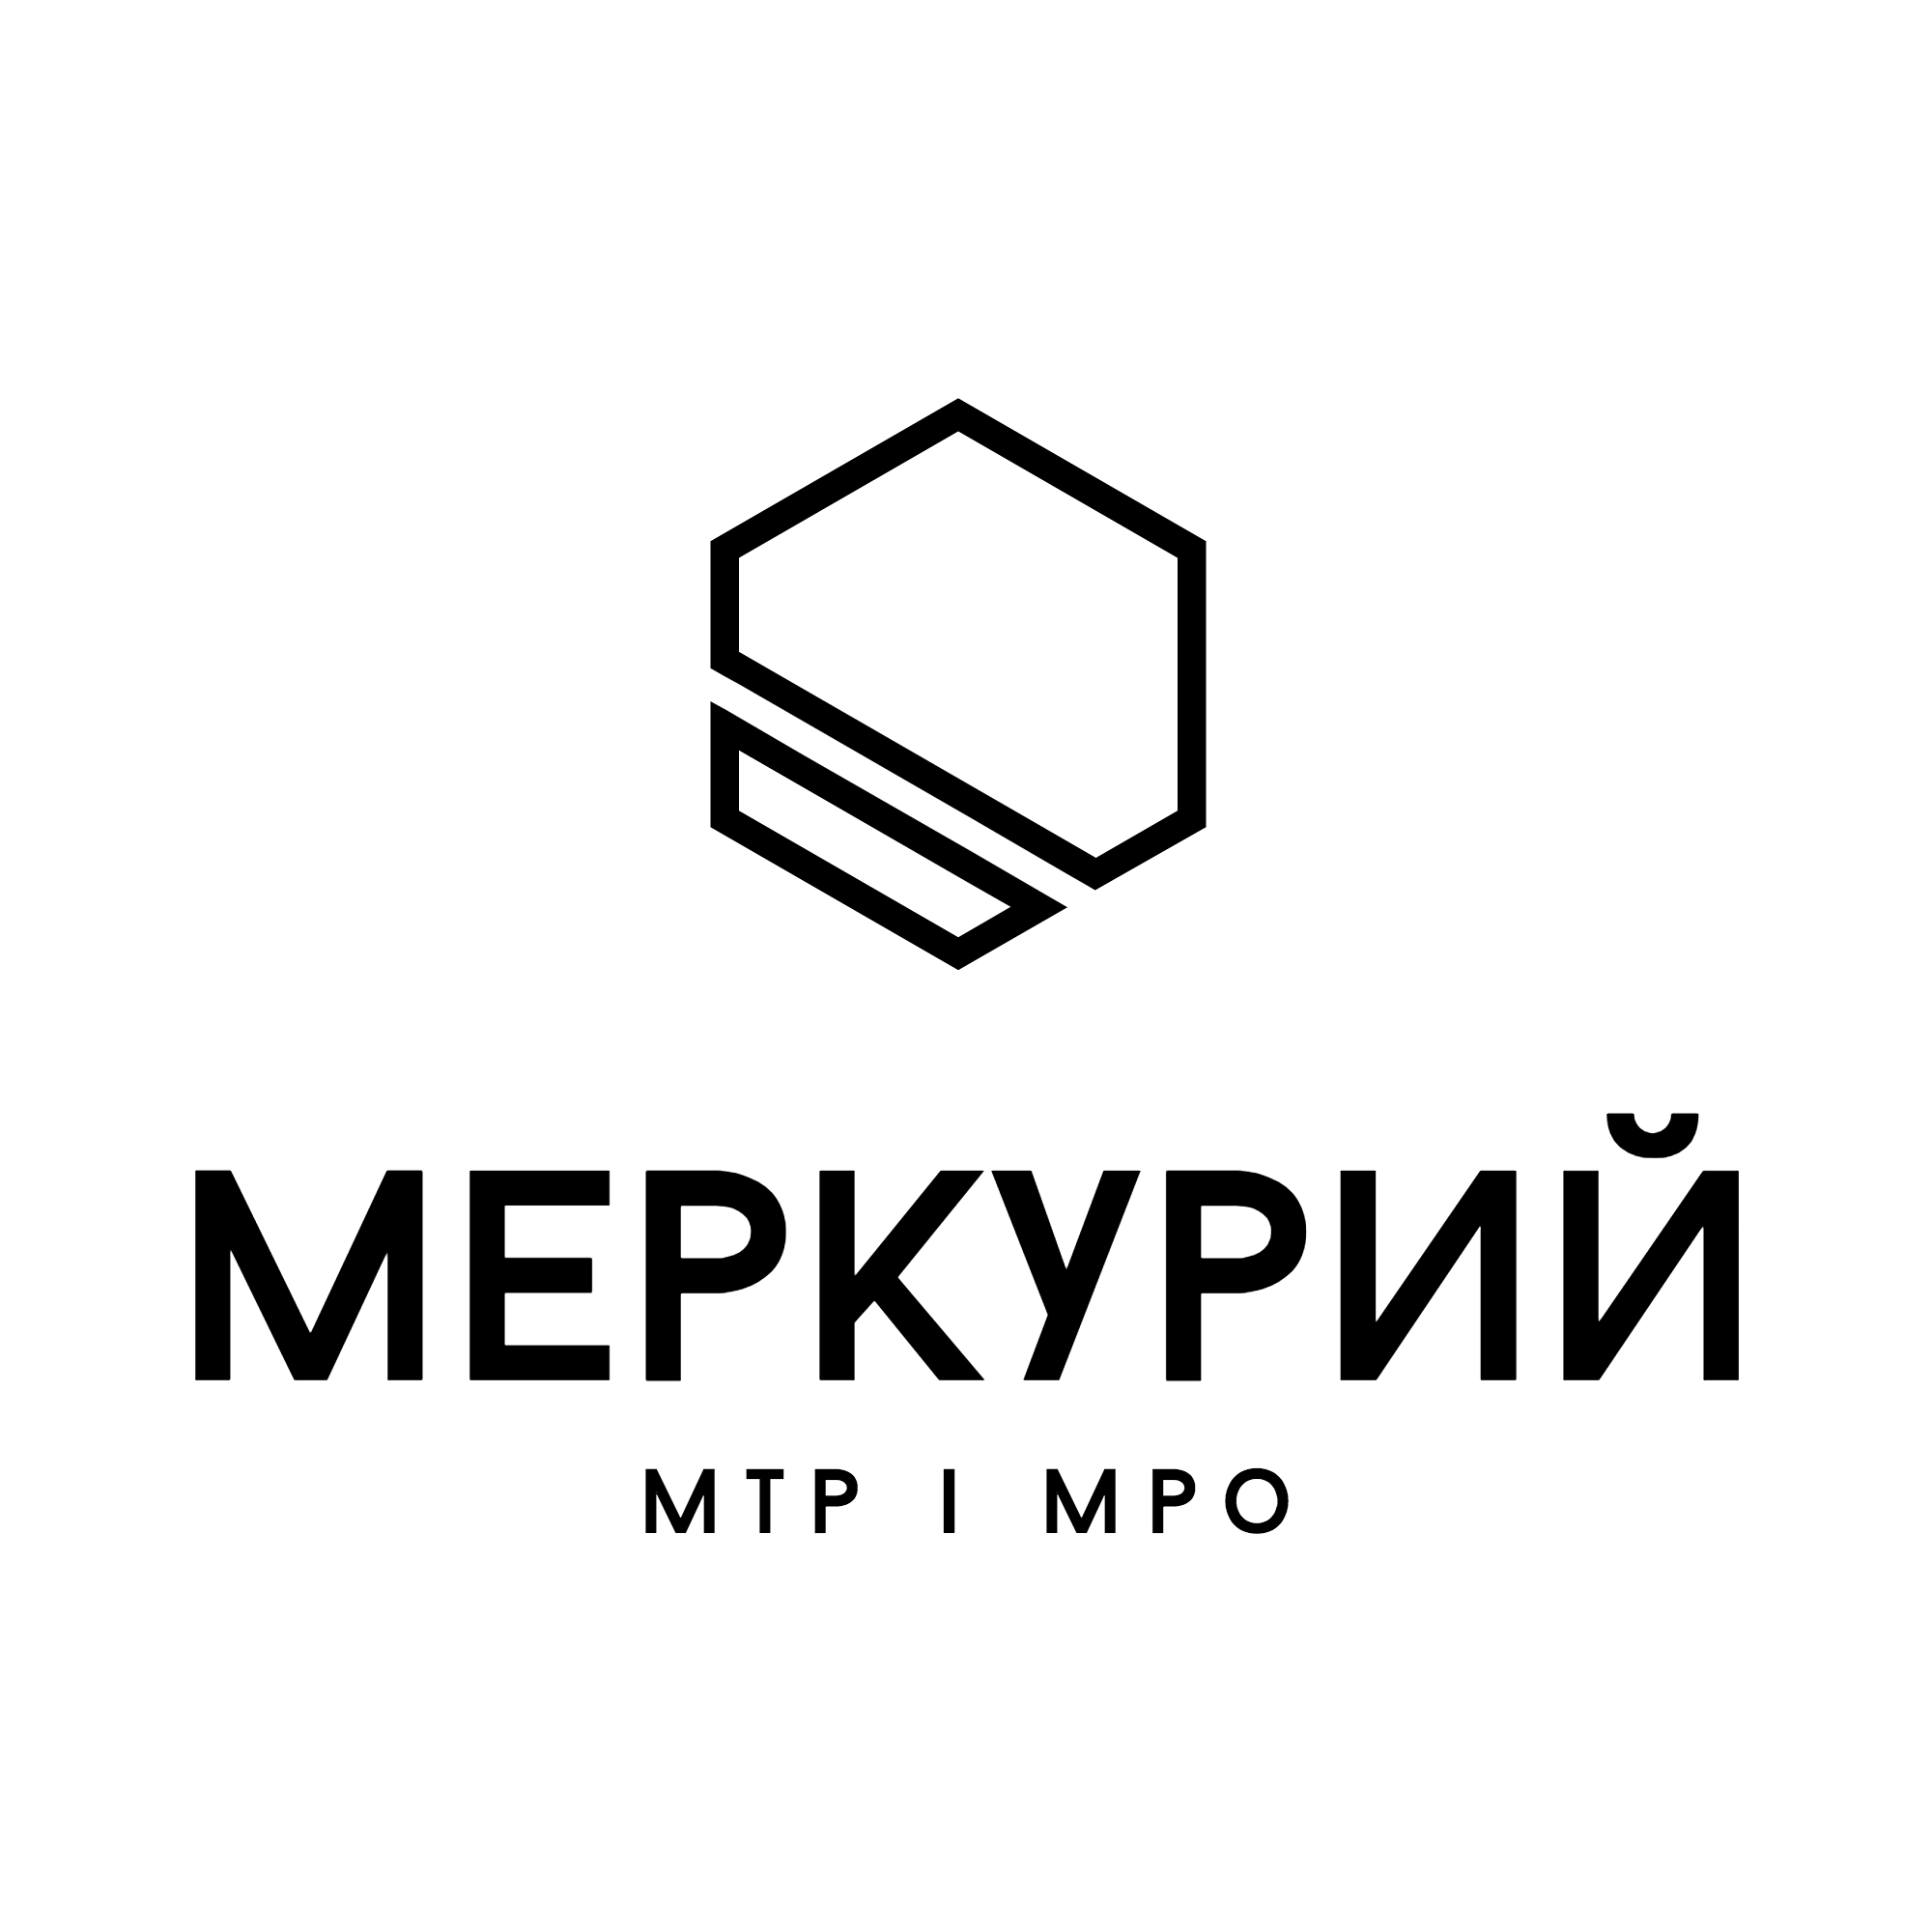 Фирма Меркурий. Меркурий строительная компания Москва. Компания Меркурий проект. СКМ- строительная компания Меркурий.